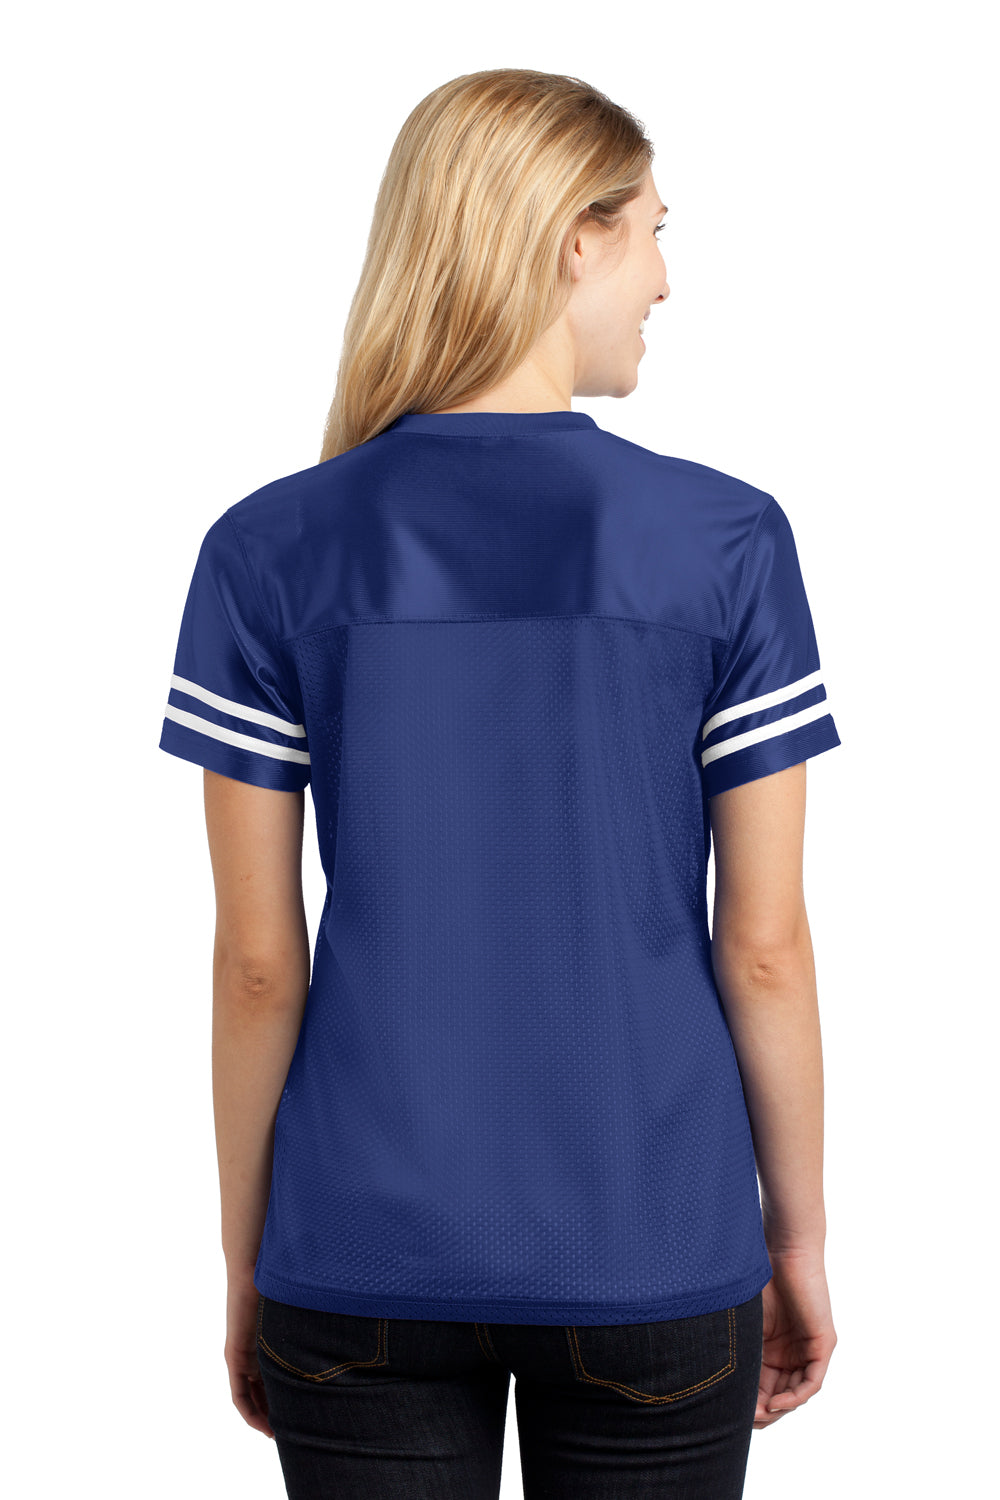 Sport-Tek LST307 Womens Short Sleeve V-Neck T-Shirt Royal Blue Back